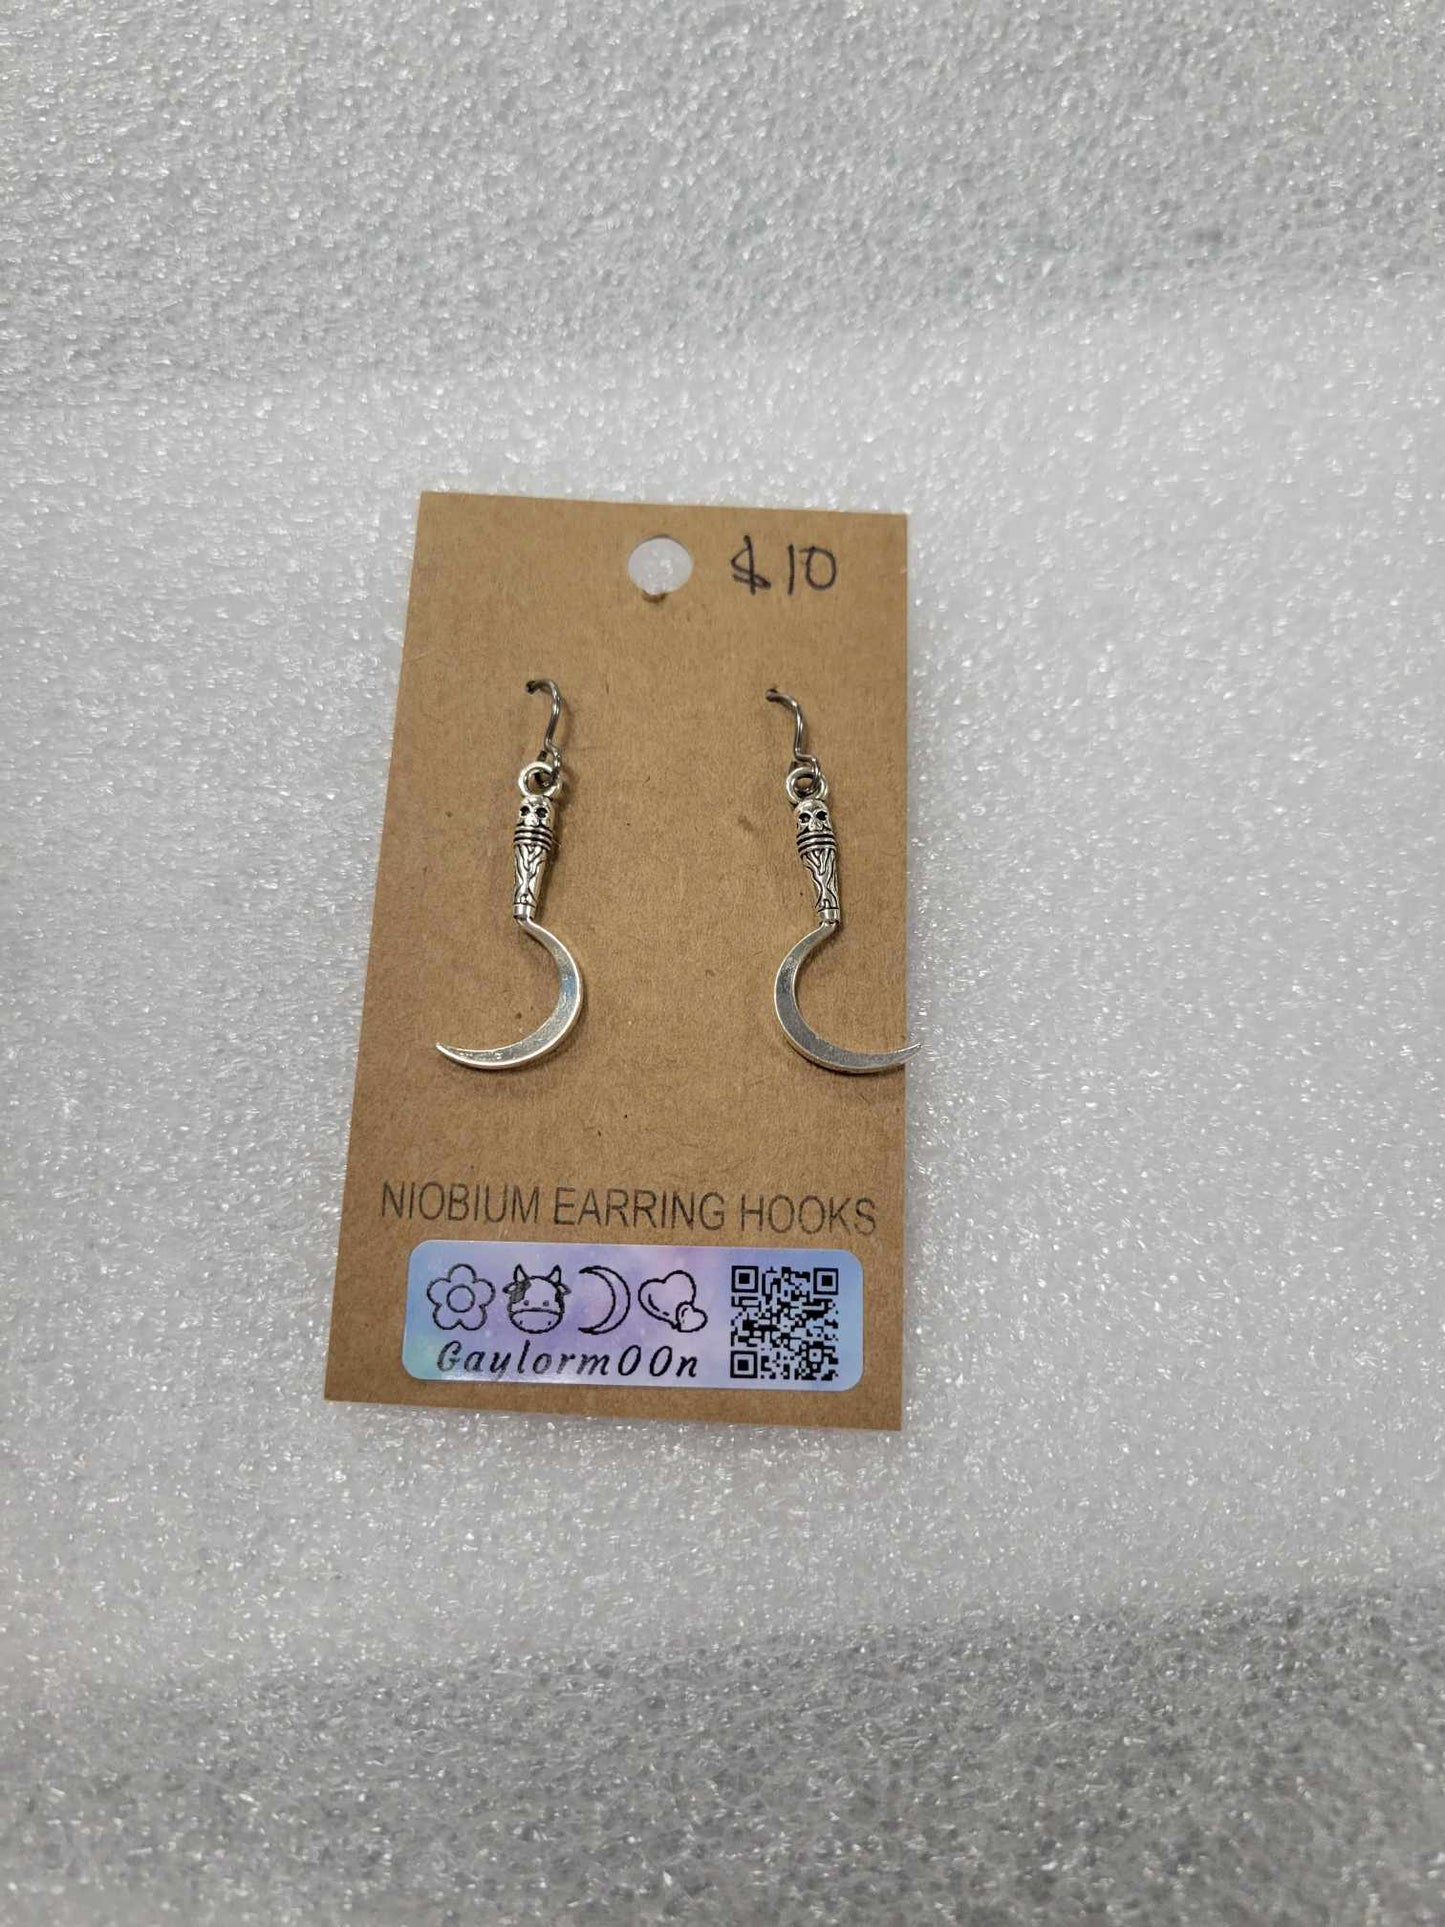 Scythes earrings